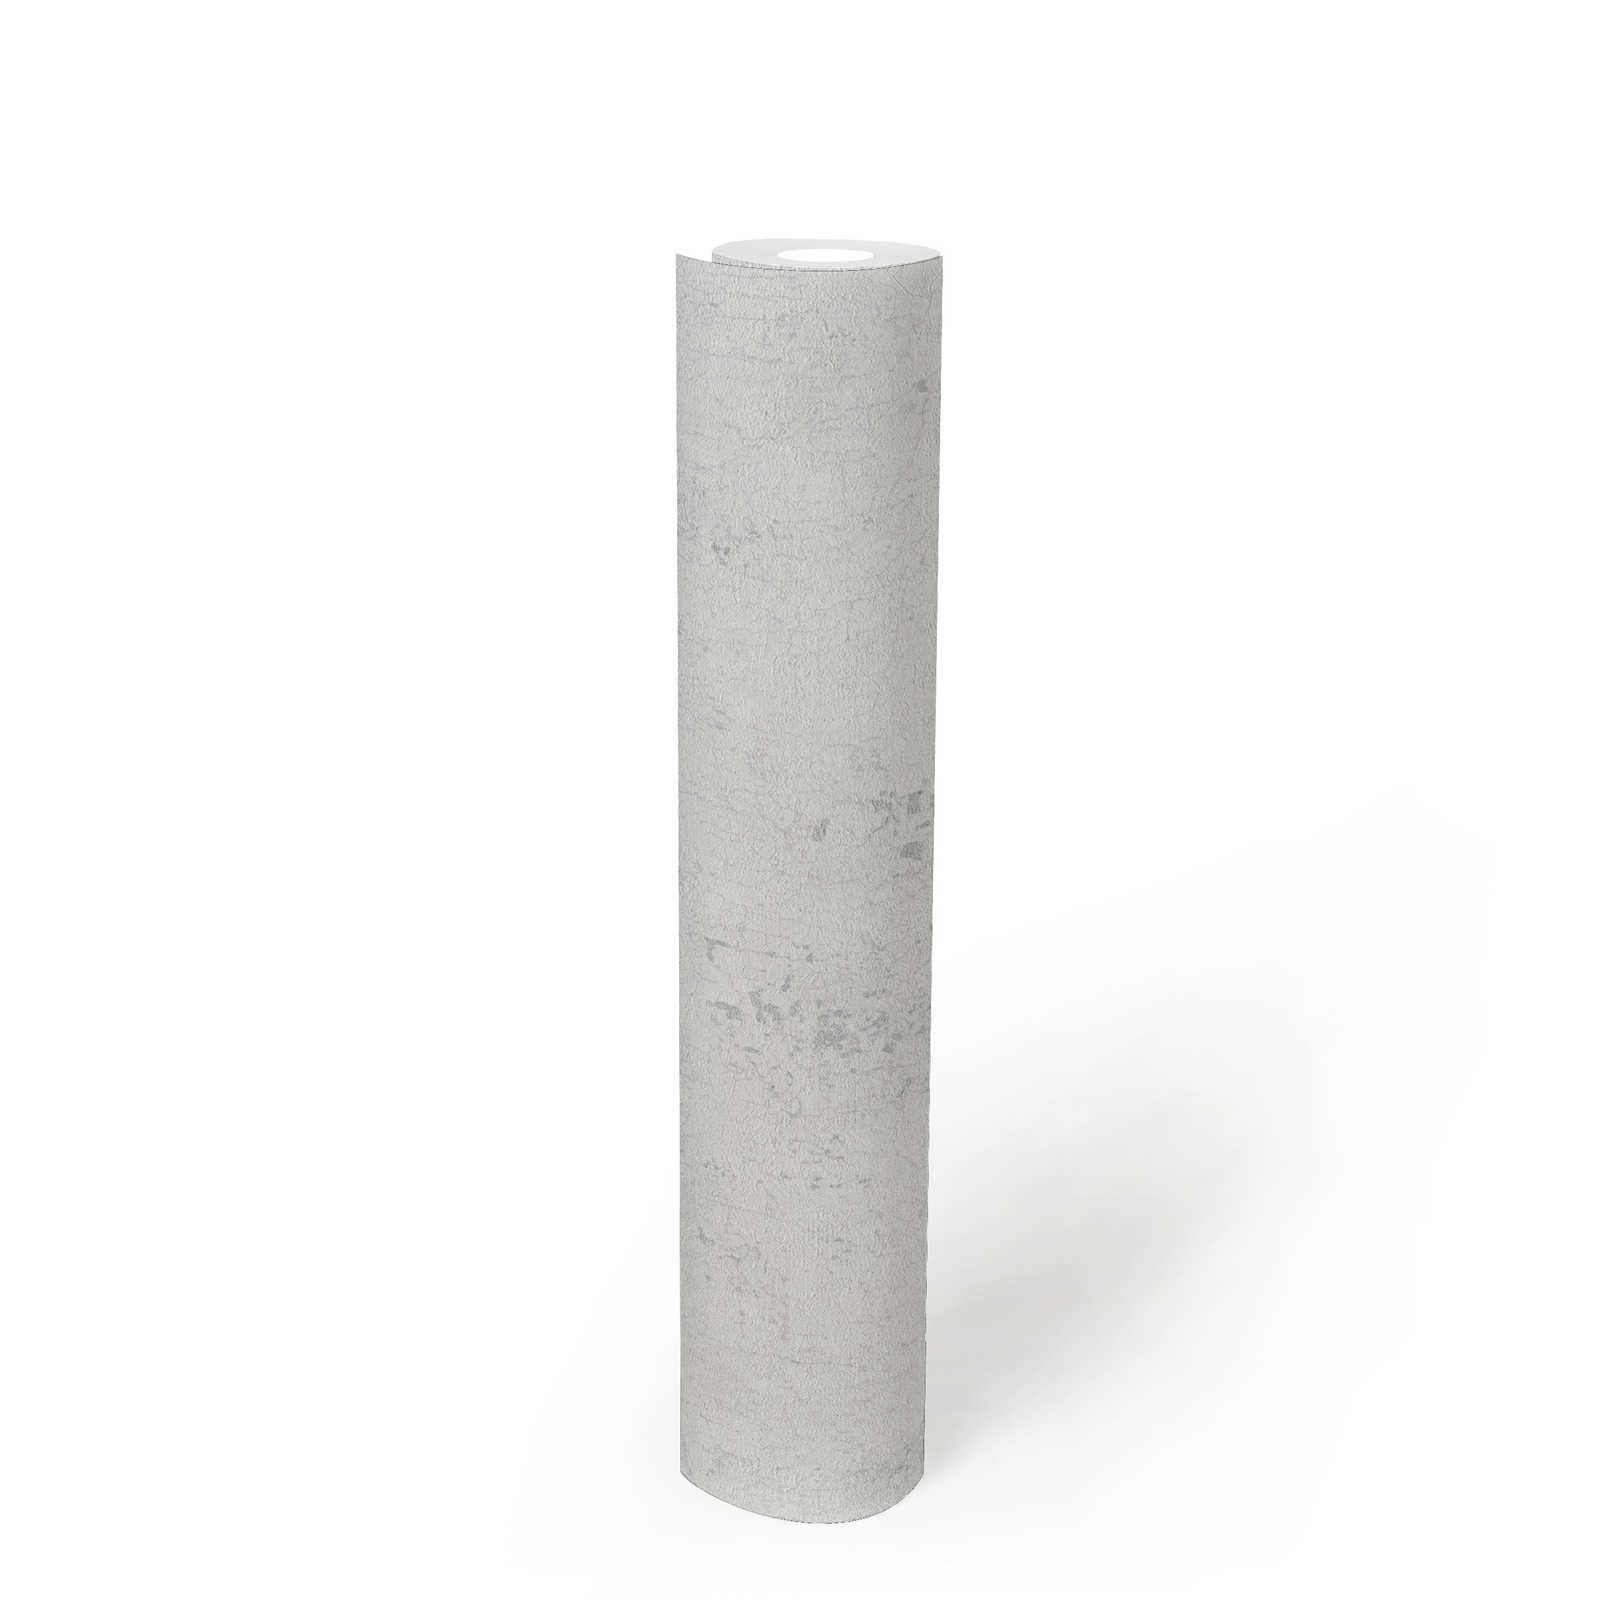             Gipsvezelbehang lichtgrijs met zilveren craquelé - grijs, metallic, wit
        